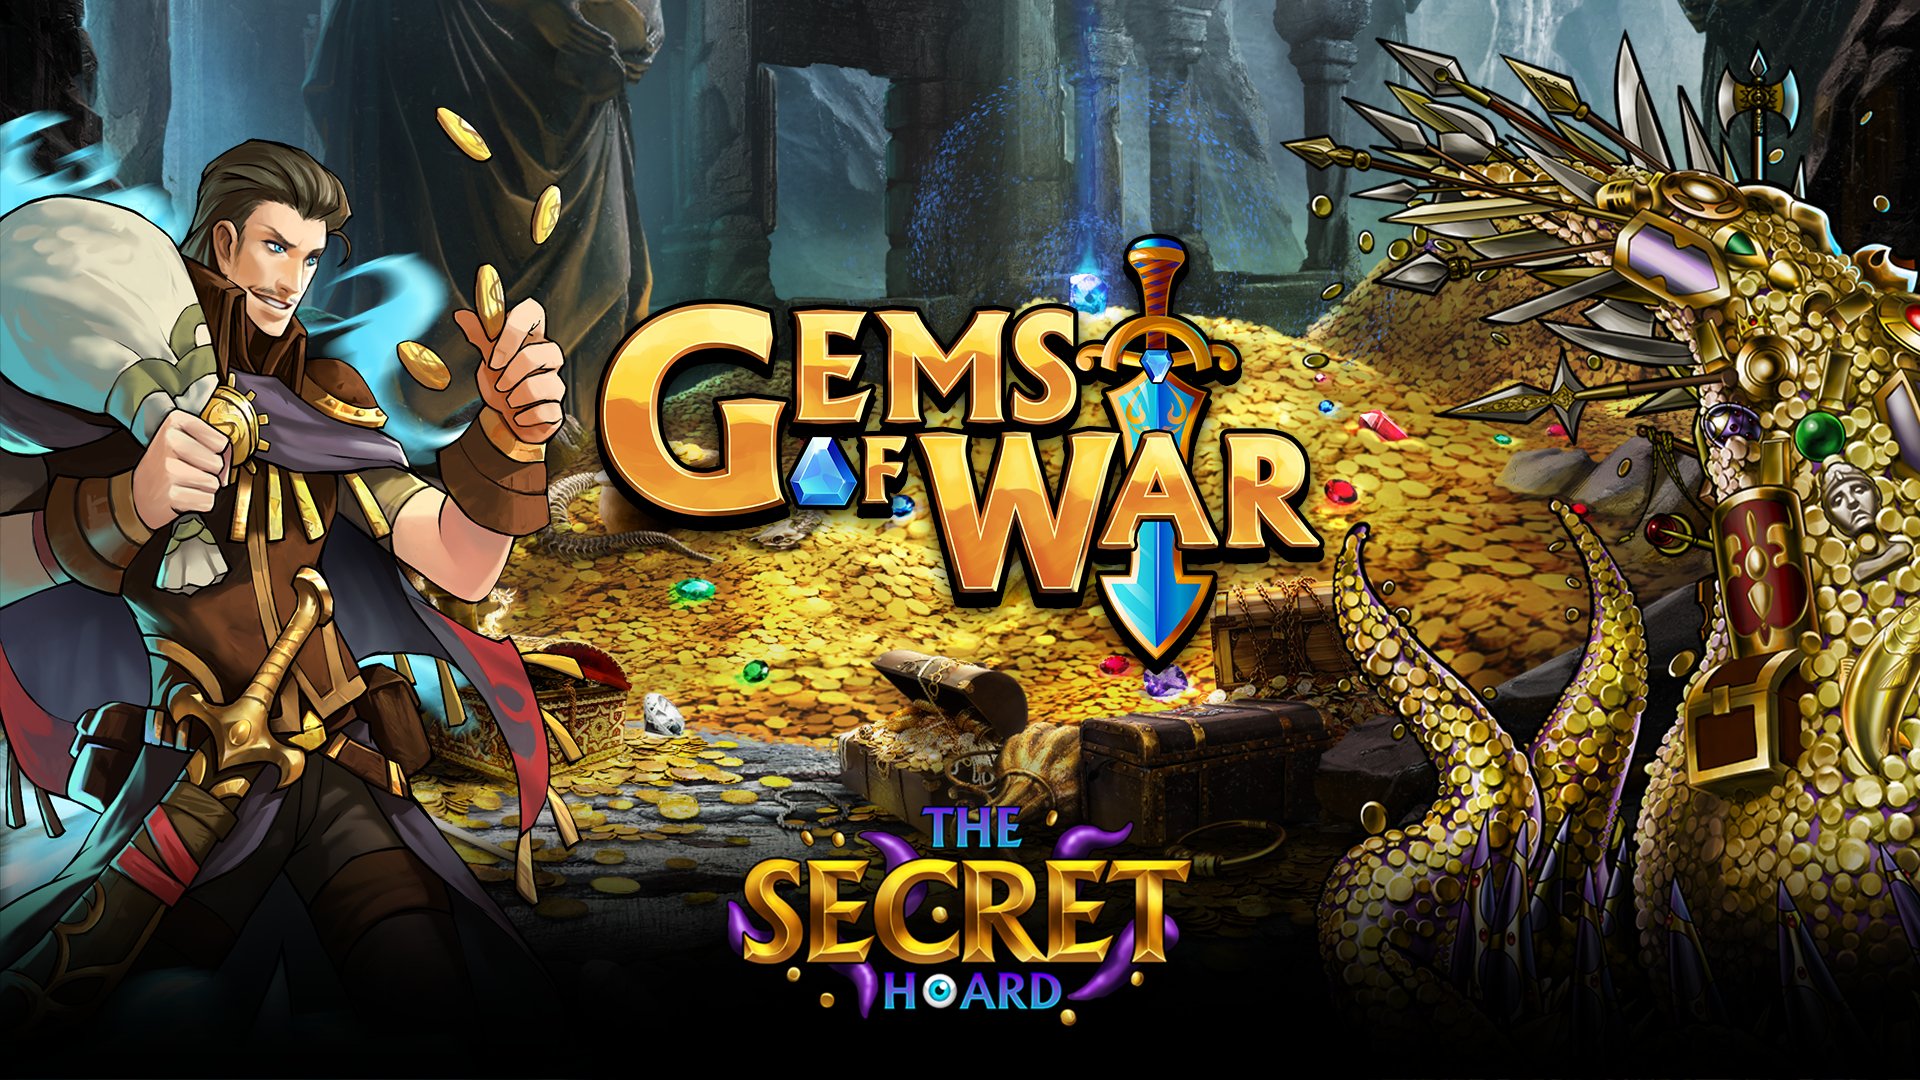 Gems of War: The Secret Hoard